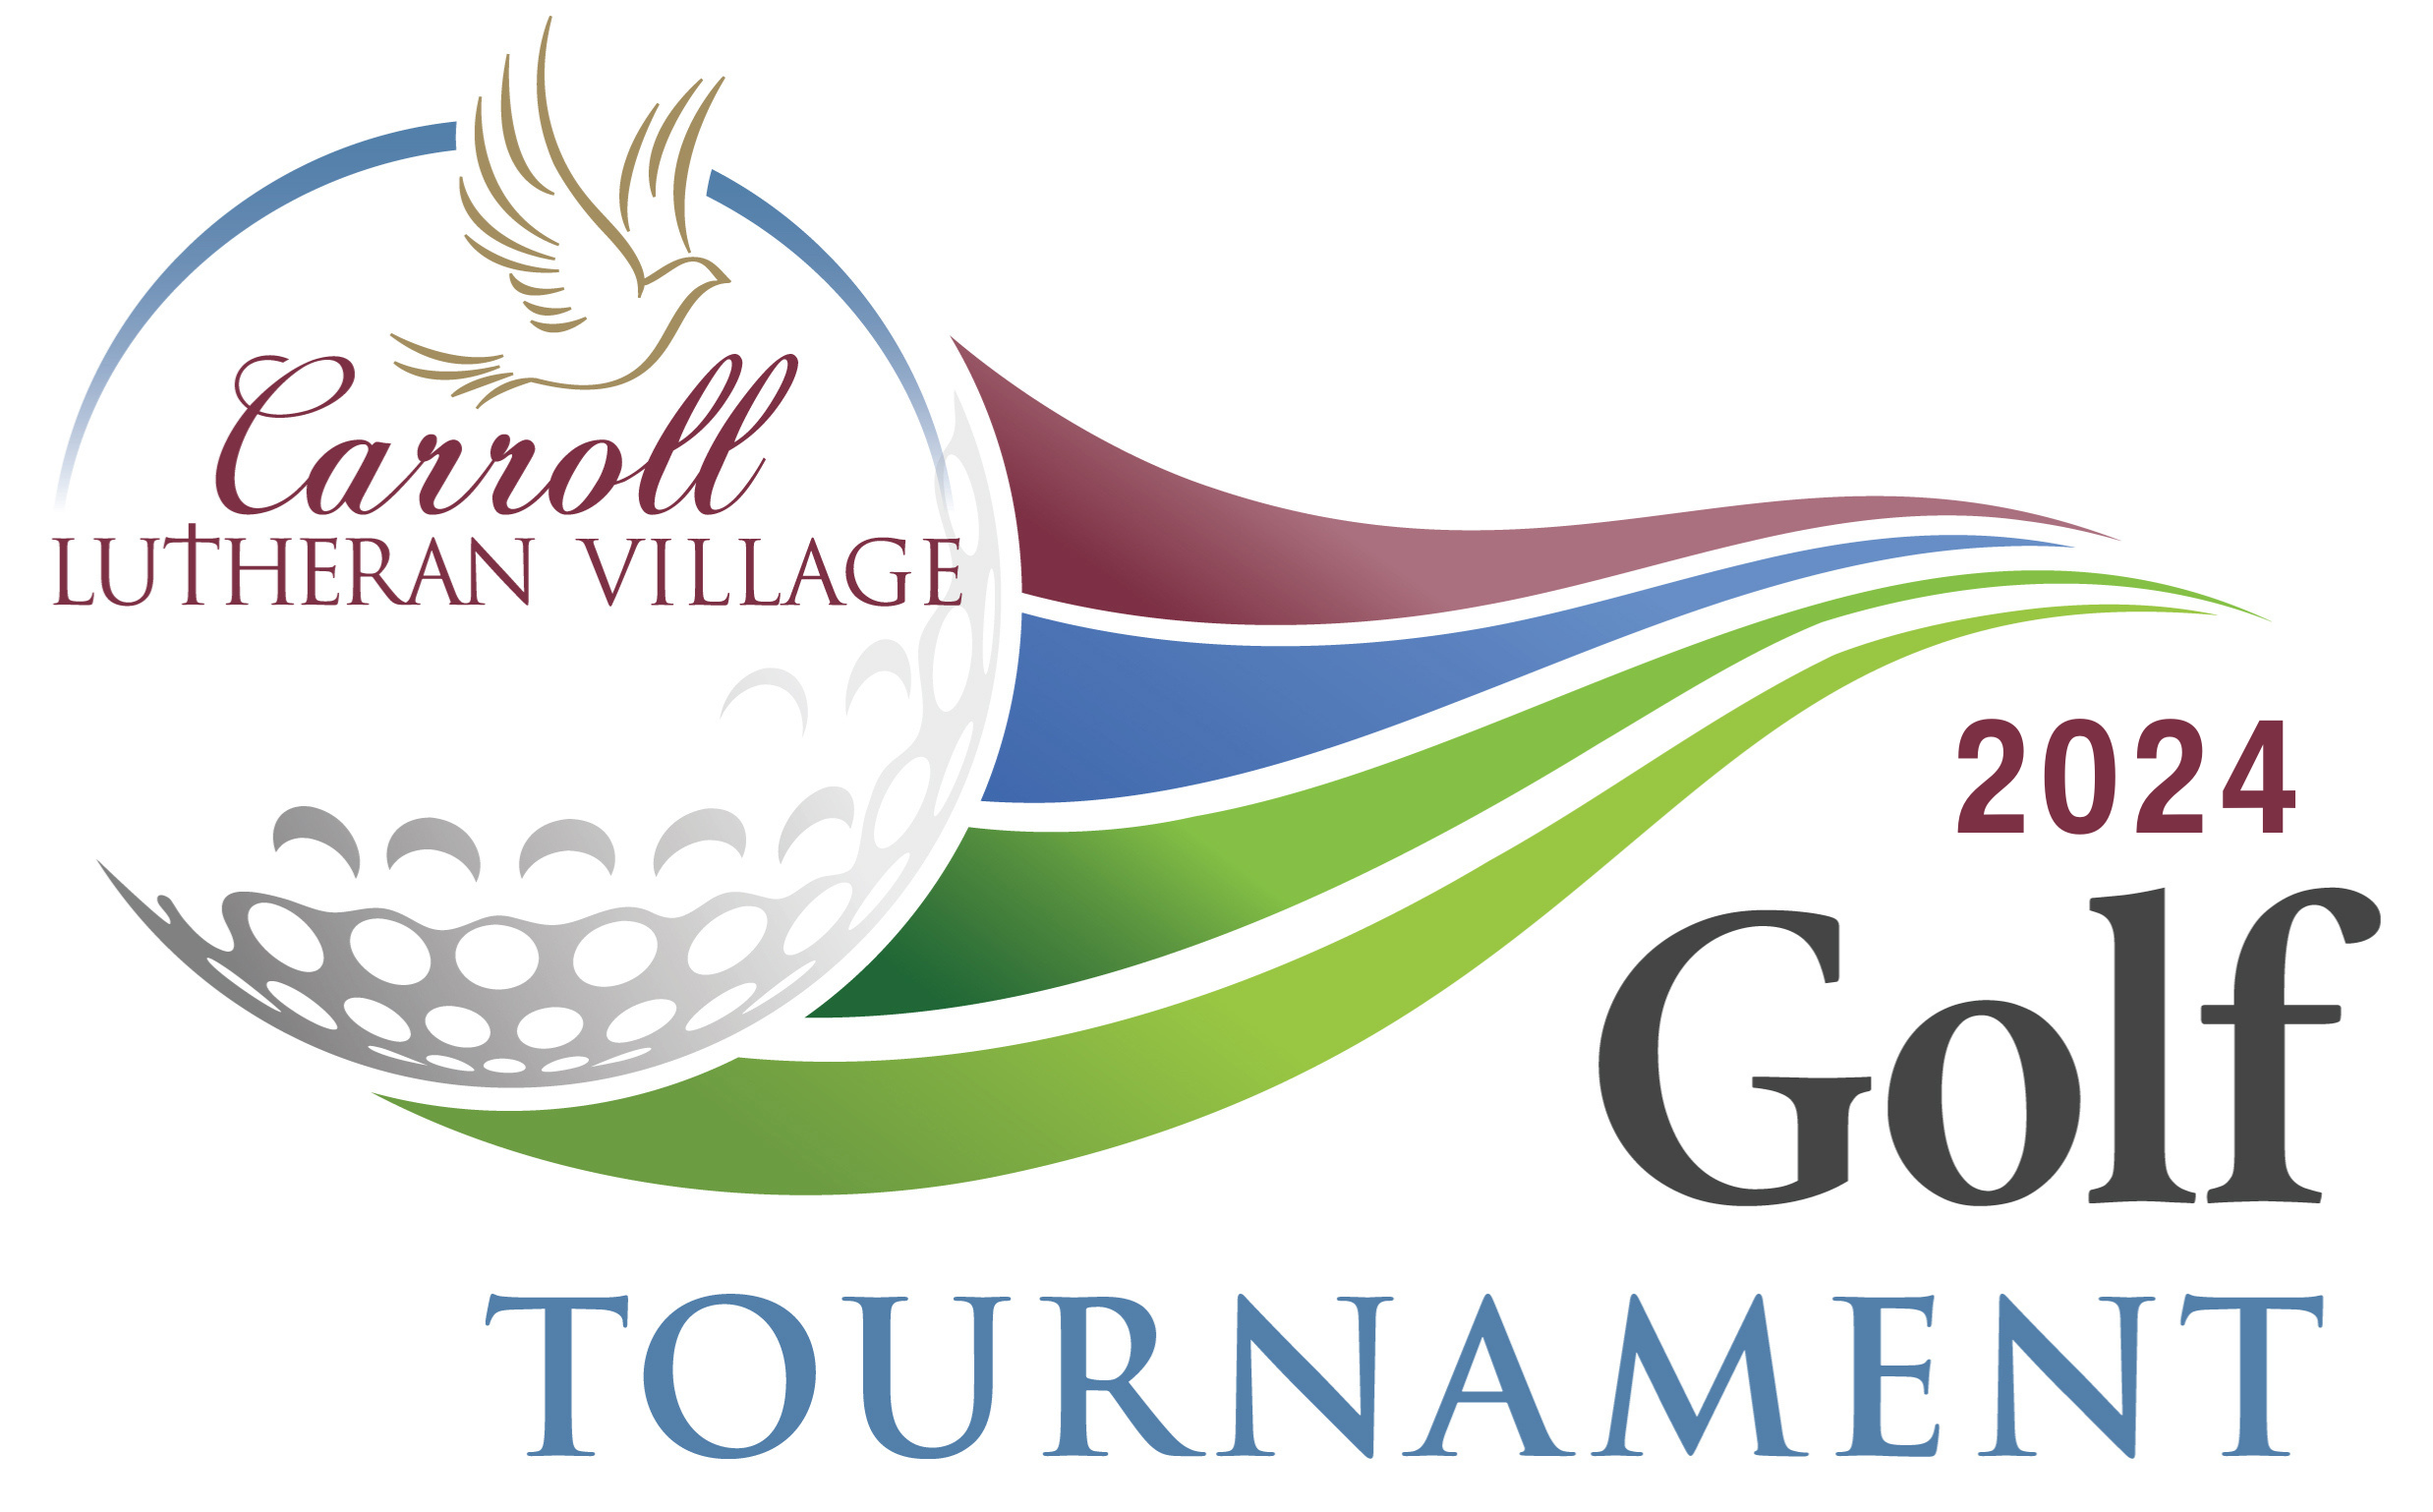 CLV Golf Tournament 2024 logo